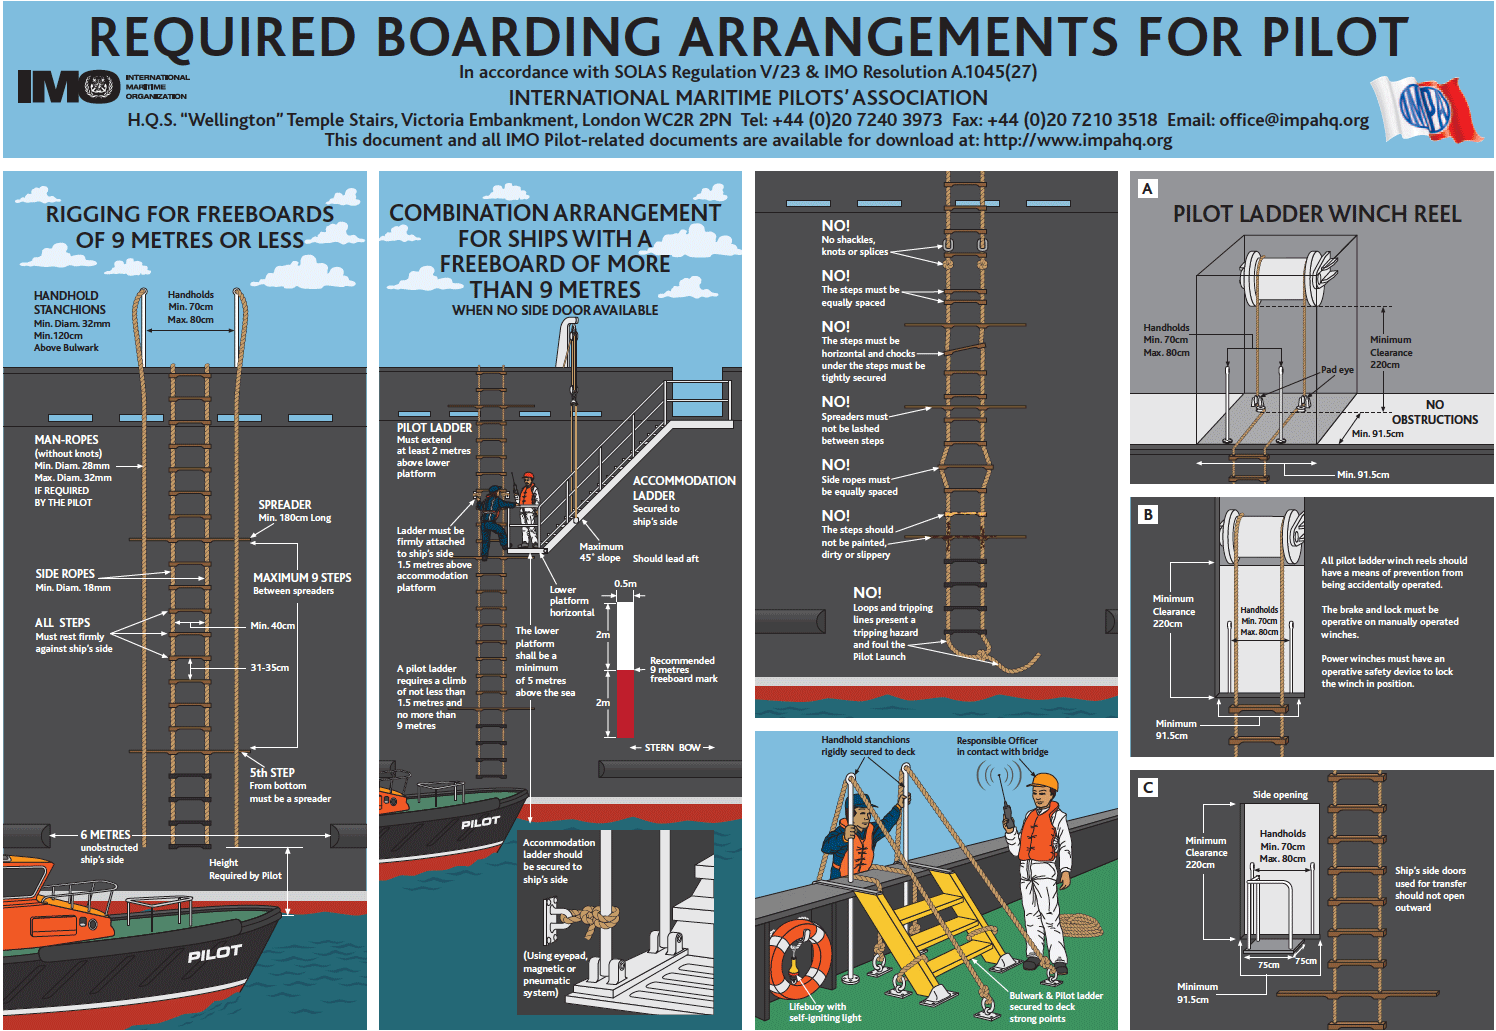 Infografía de requisitos de embarque